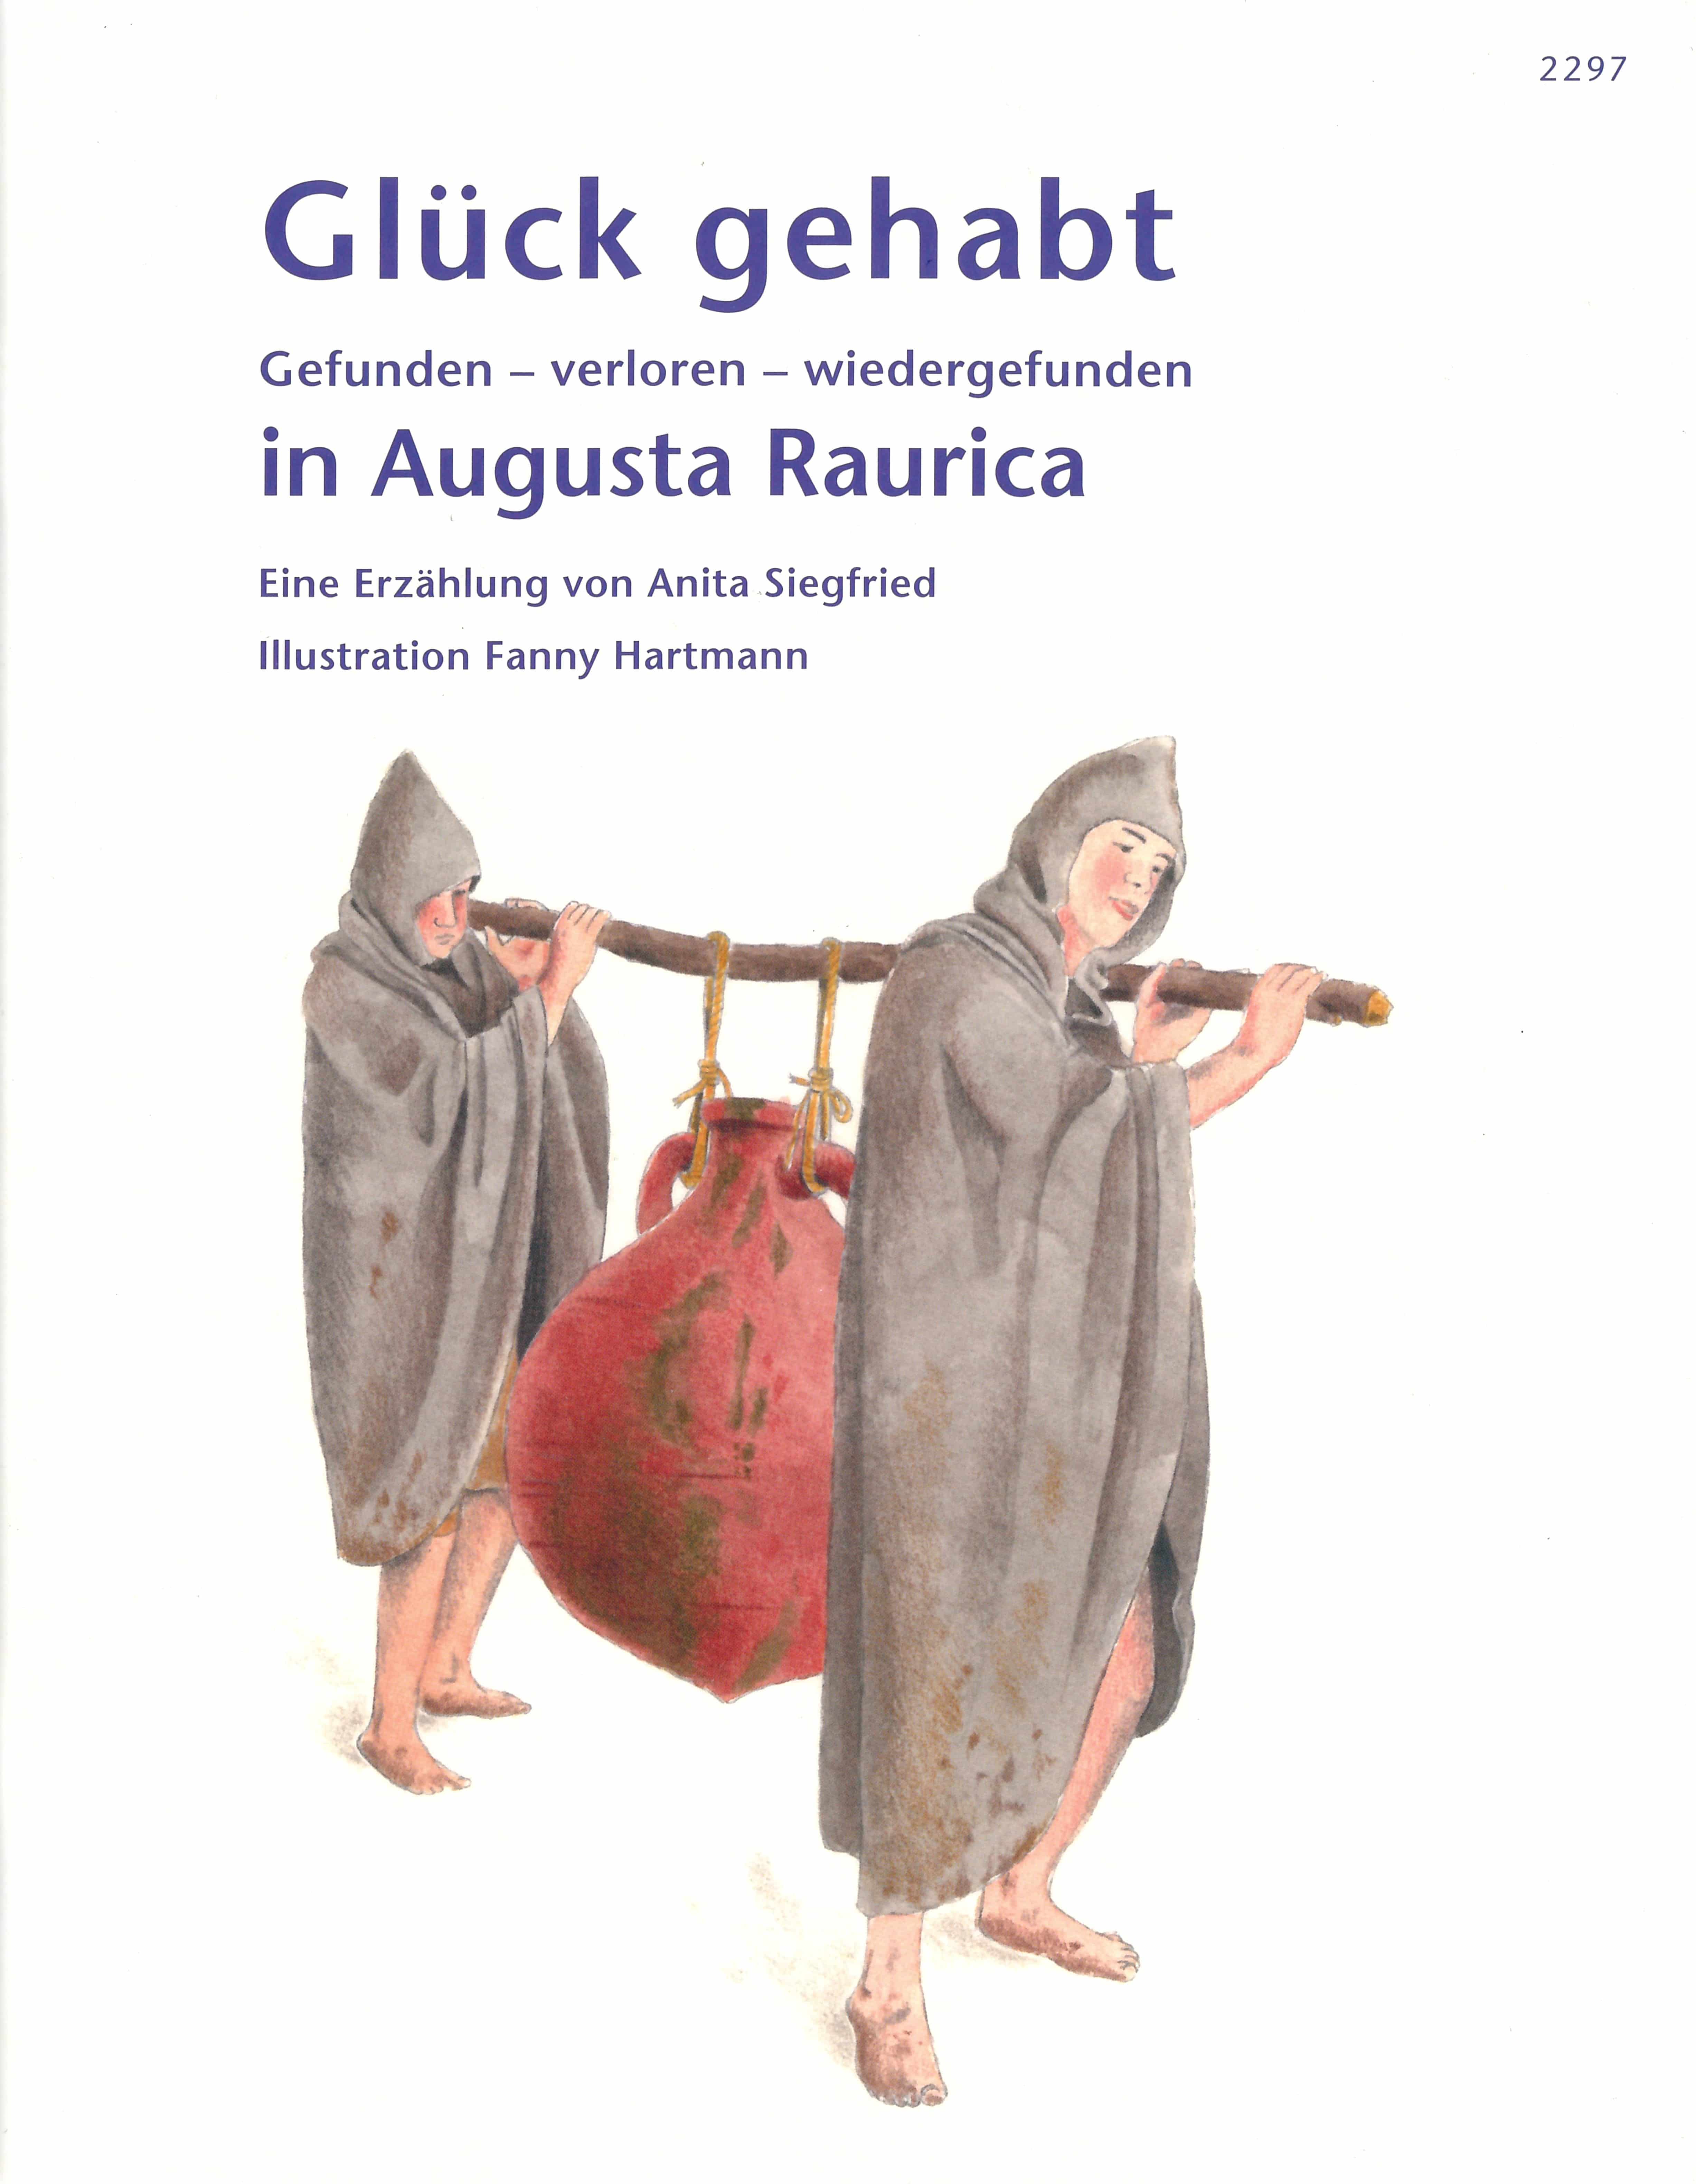 Glueck gehabt. Gefunden–verloren–wiedergefunden in Augusta Raurica, Buch von Anita Siegfried, Illustration F. Hartmann, SJW